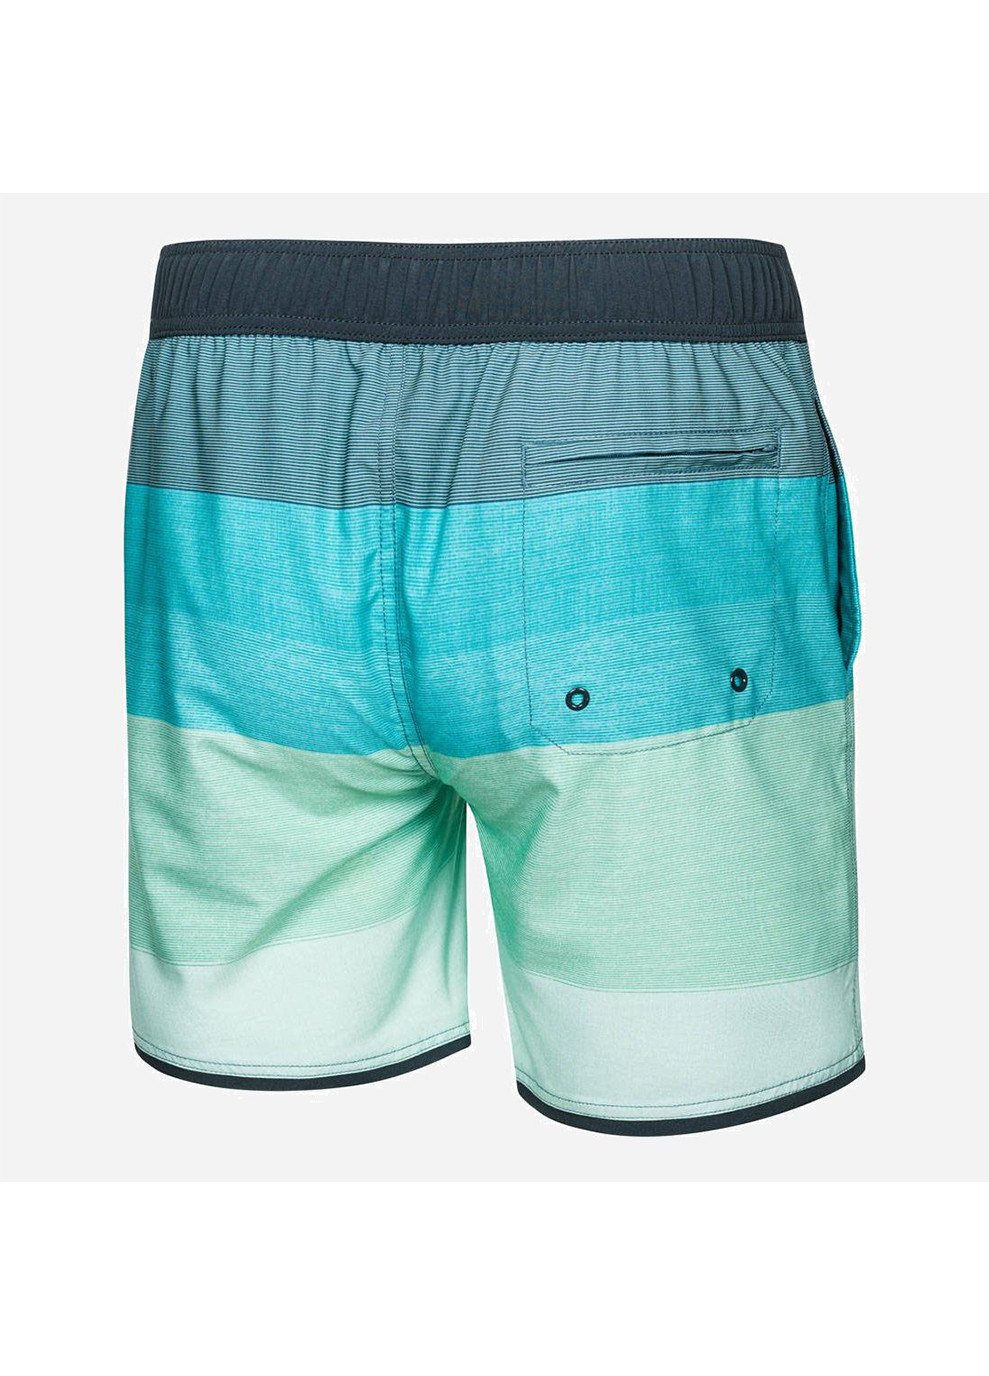 Мужские зеленые спортивные пляжные шорты nolan 302-32 серый/мятный Aqua Speed